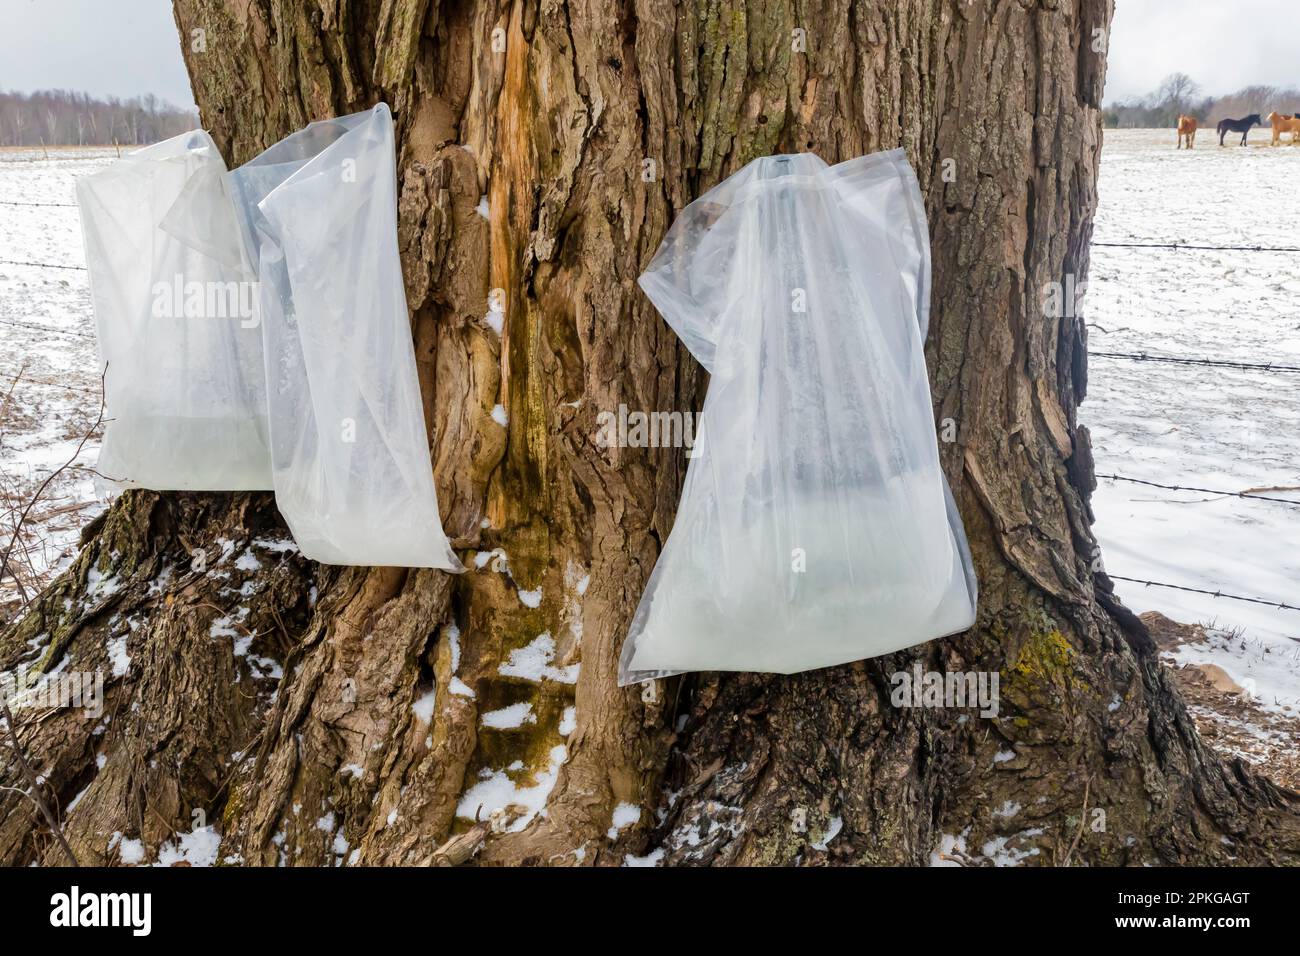 Plastiktüten, die an diesem kalten Tag eingefrorenen sap sammeln, für die Herstellung von Ahornsirup durch Amish-Bauern in Zentral-Michigan, USA Stockfoto